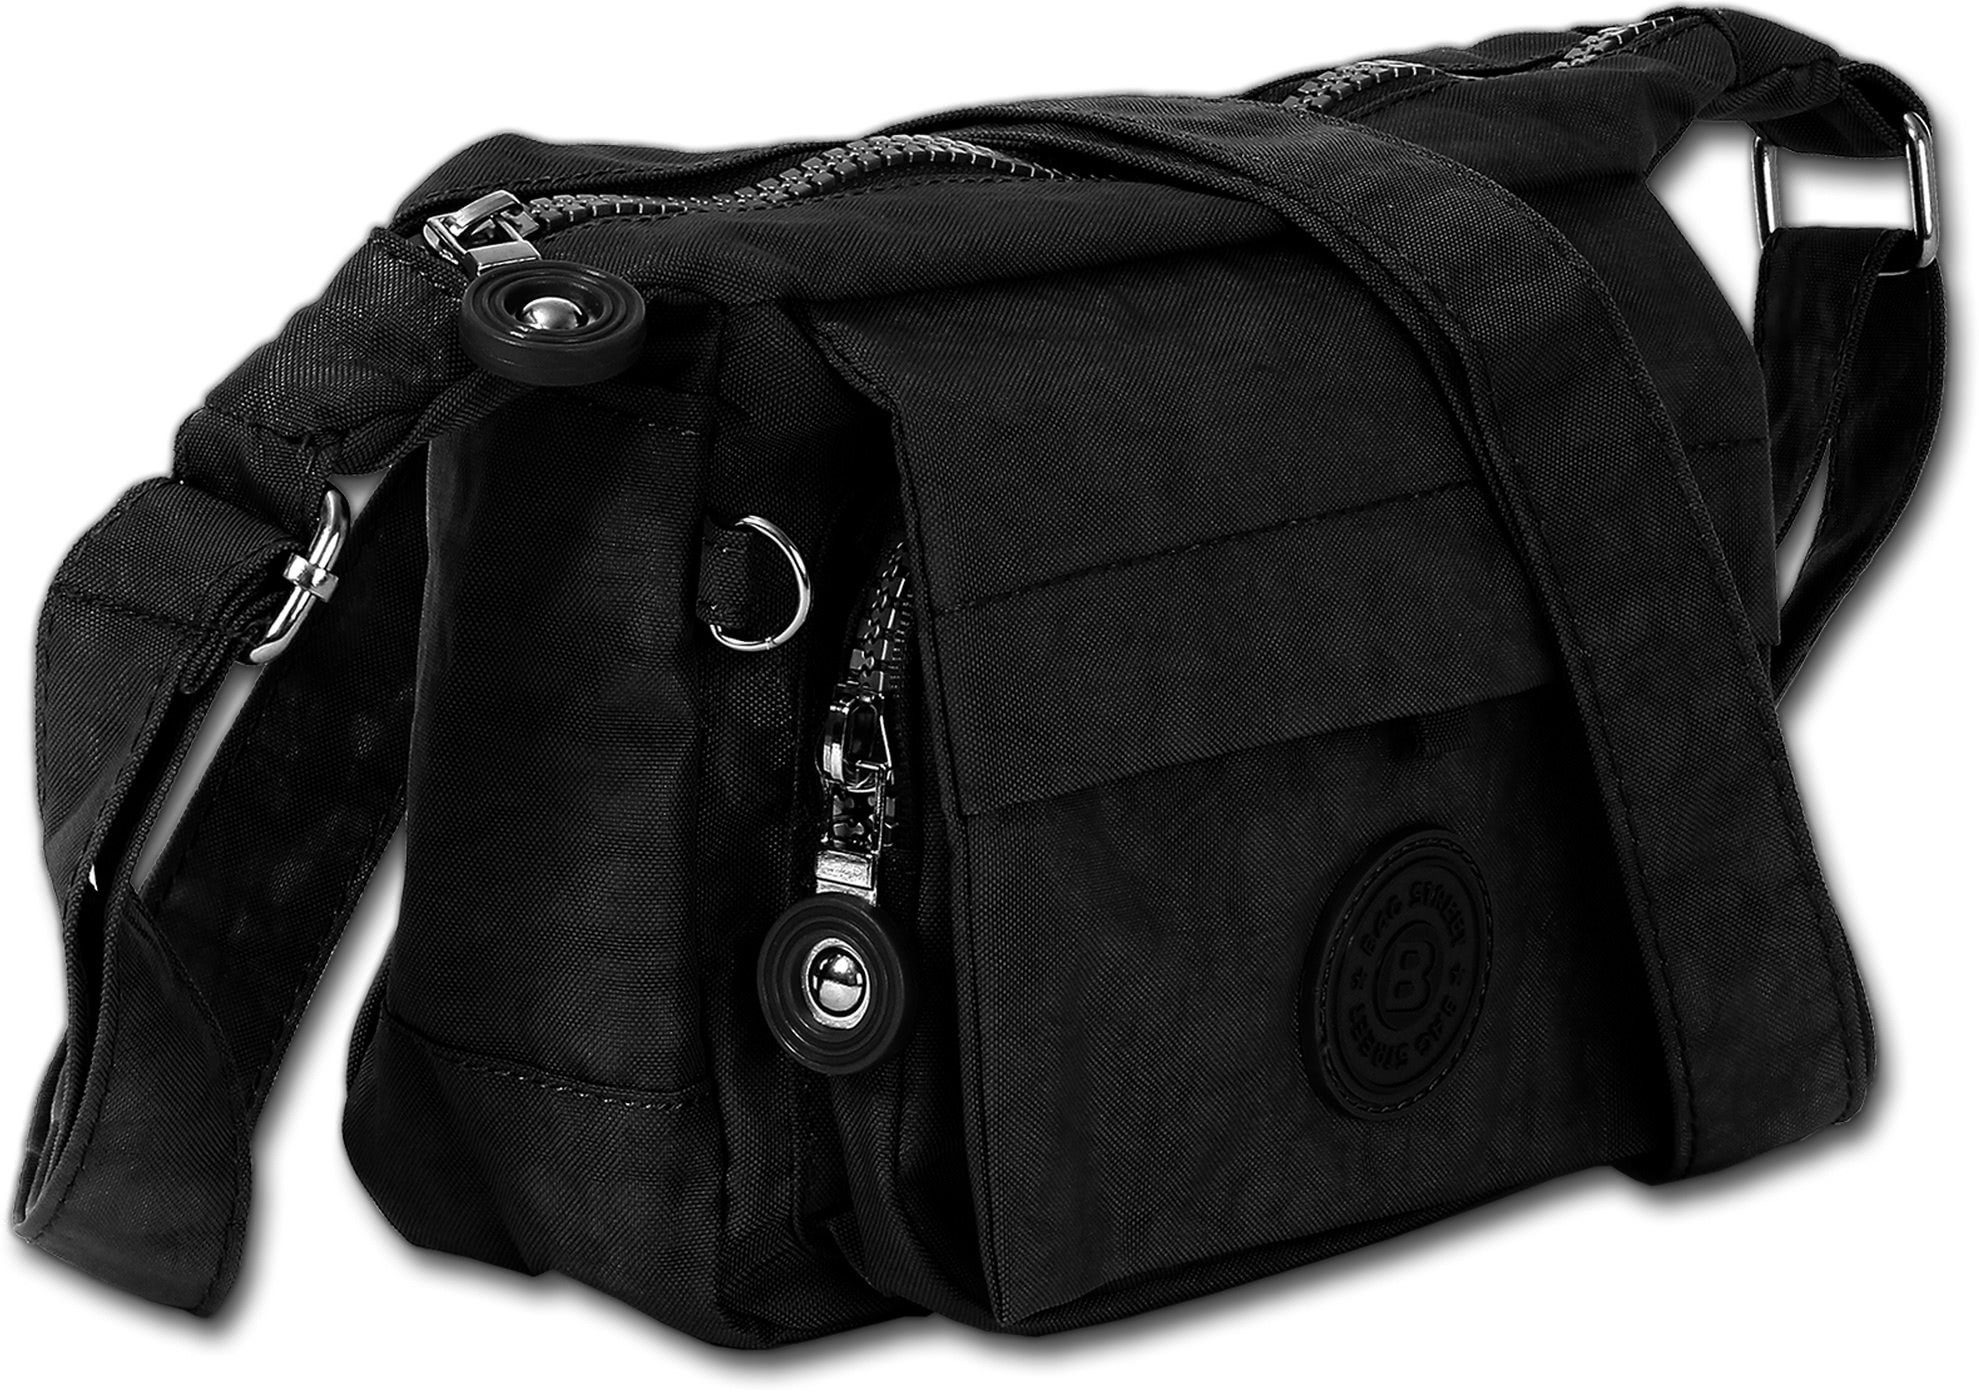 Damen BAG Damen, schwarz Nylon Tasche Abendtasche Tasche STREET Textilnylon Street strapazierfähiges Handtasche, Bag Jugend